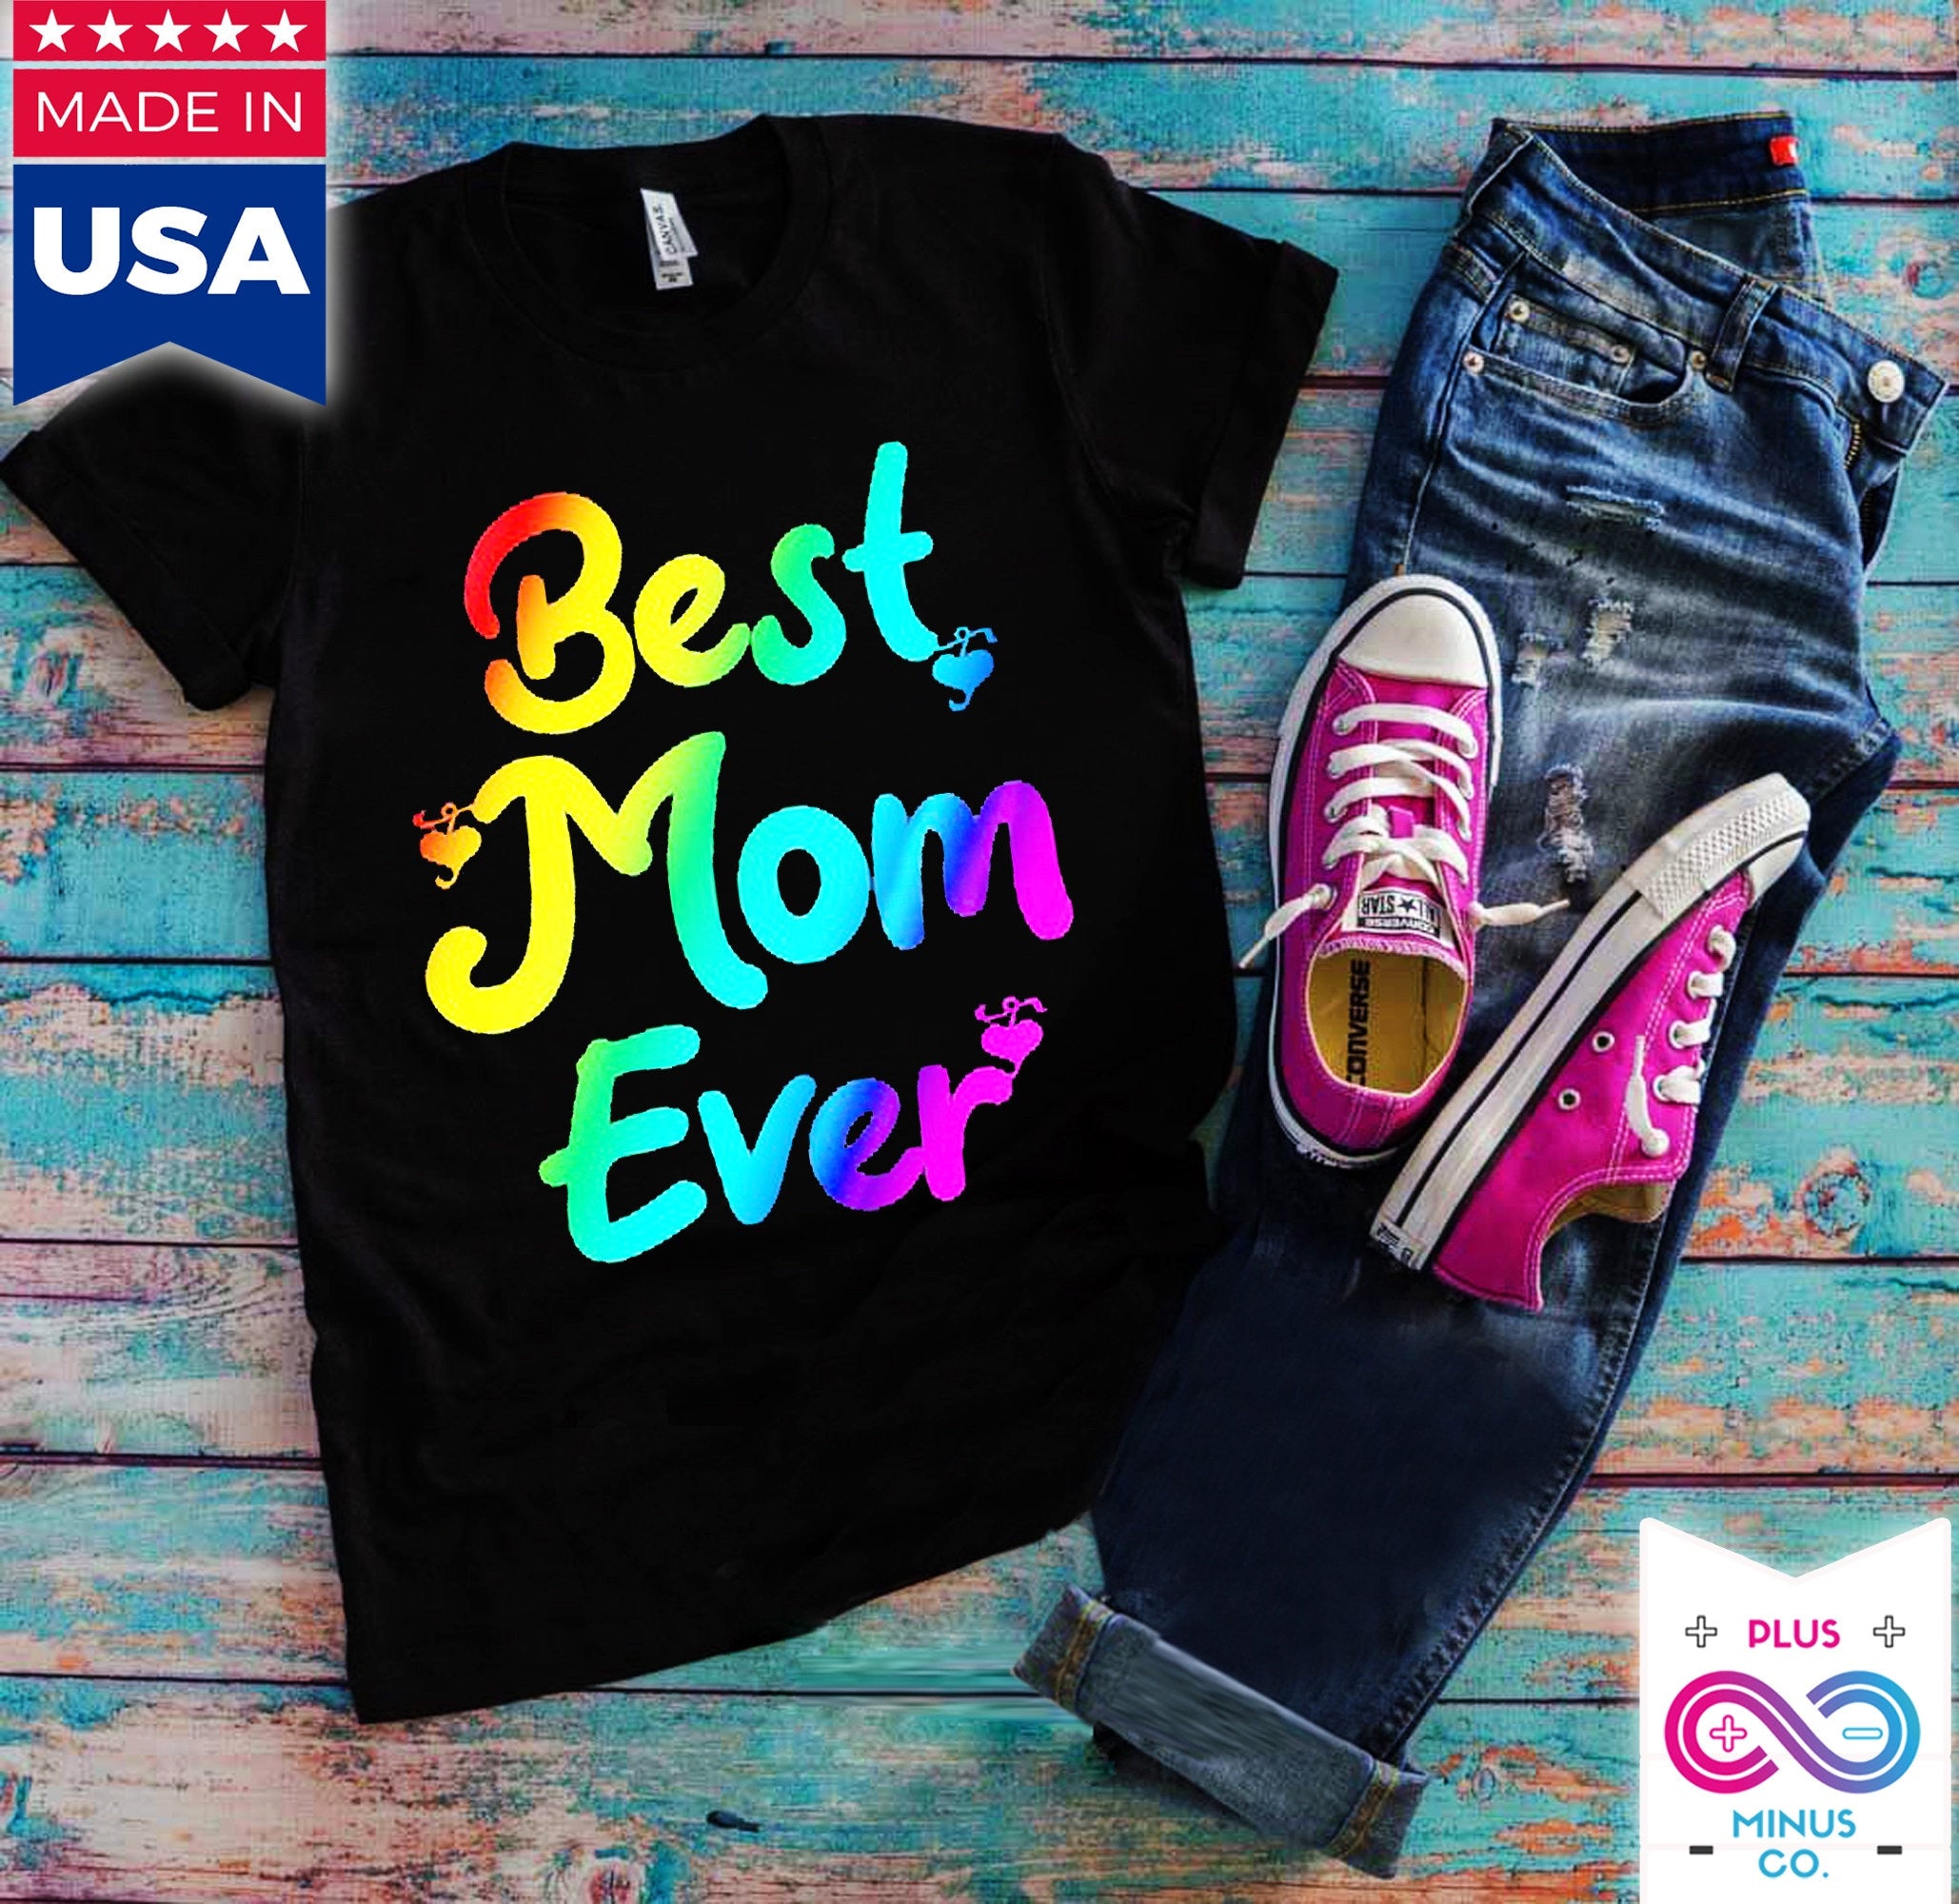 Найкраща мама | Різнокольорові футболки, подарунок на День матері, сорочка на День матері, подарунок для мами, подарунок на день народження мами - plusminusco.com